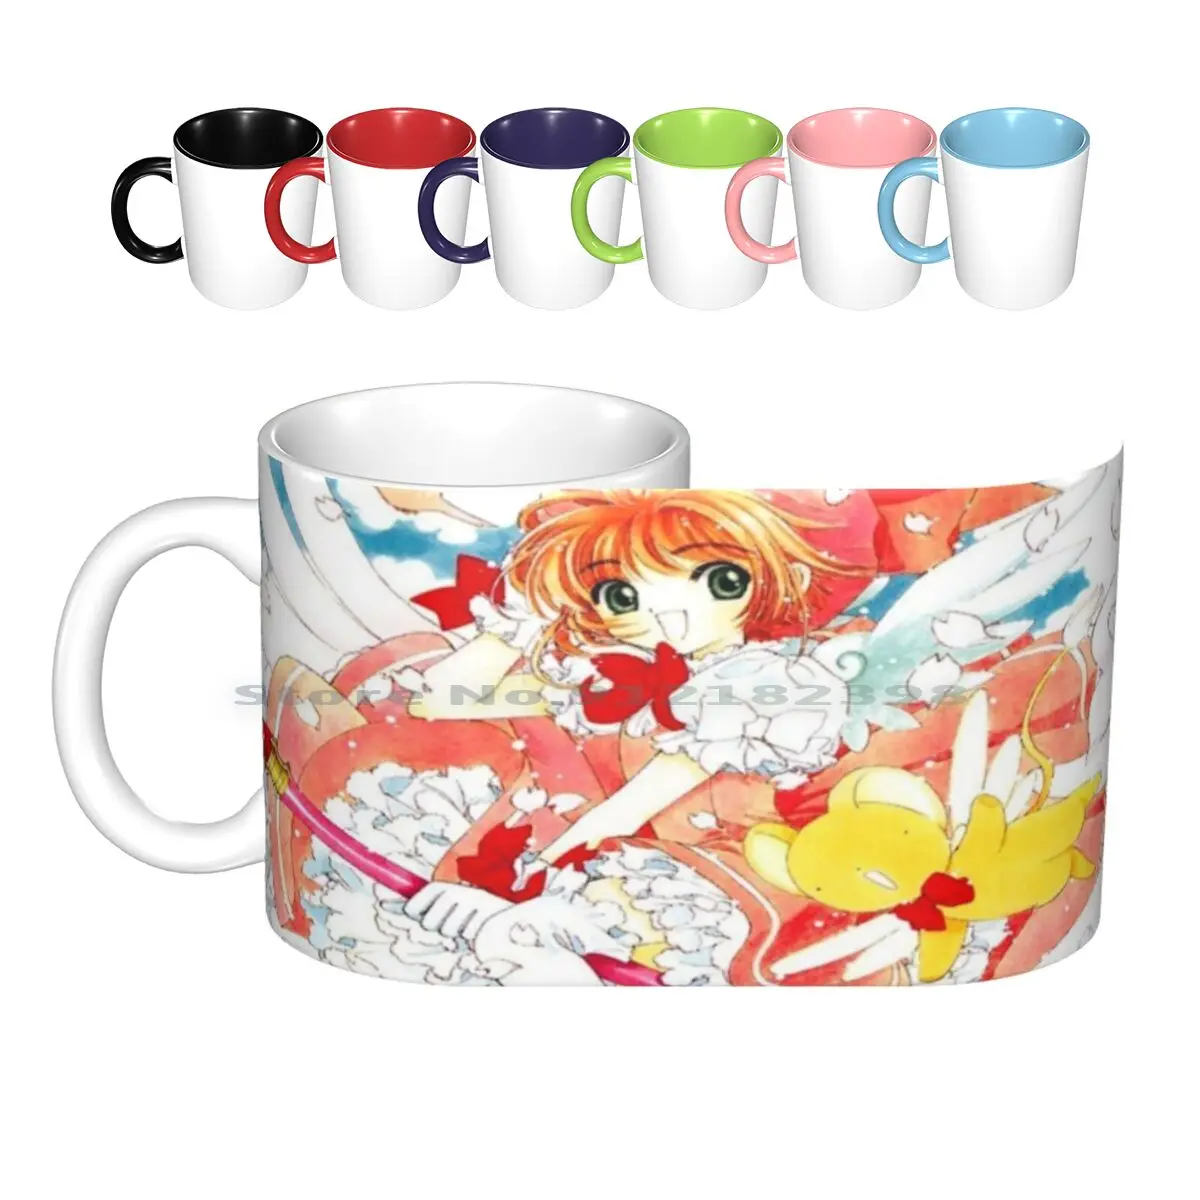 

Керамические кружки Sakura, кофейные чашки, Кружка для молока и чая, картонные капсулы, королева сакуры, принцесса, чудо, Usagi, цветок для девушек ...